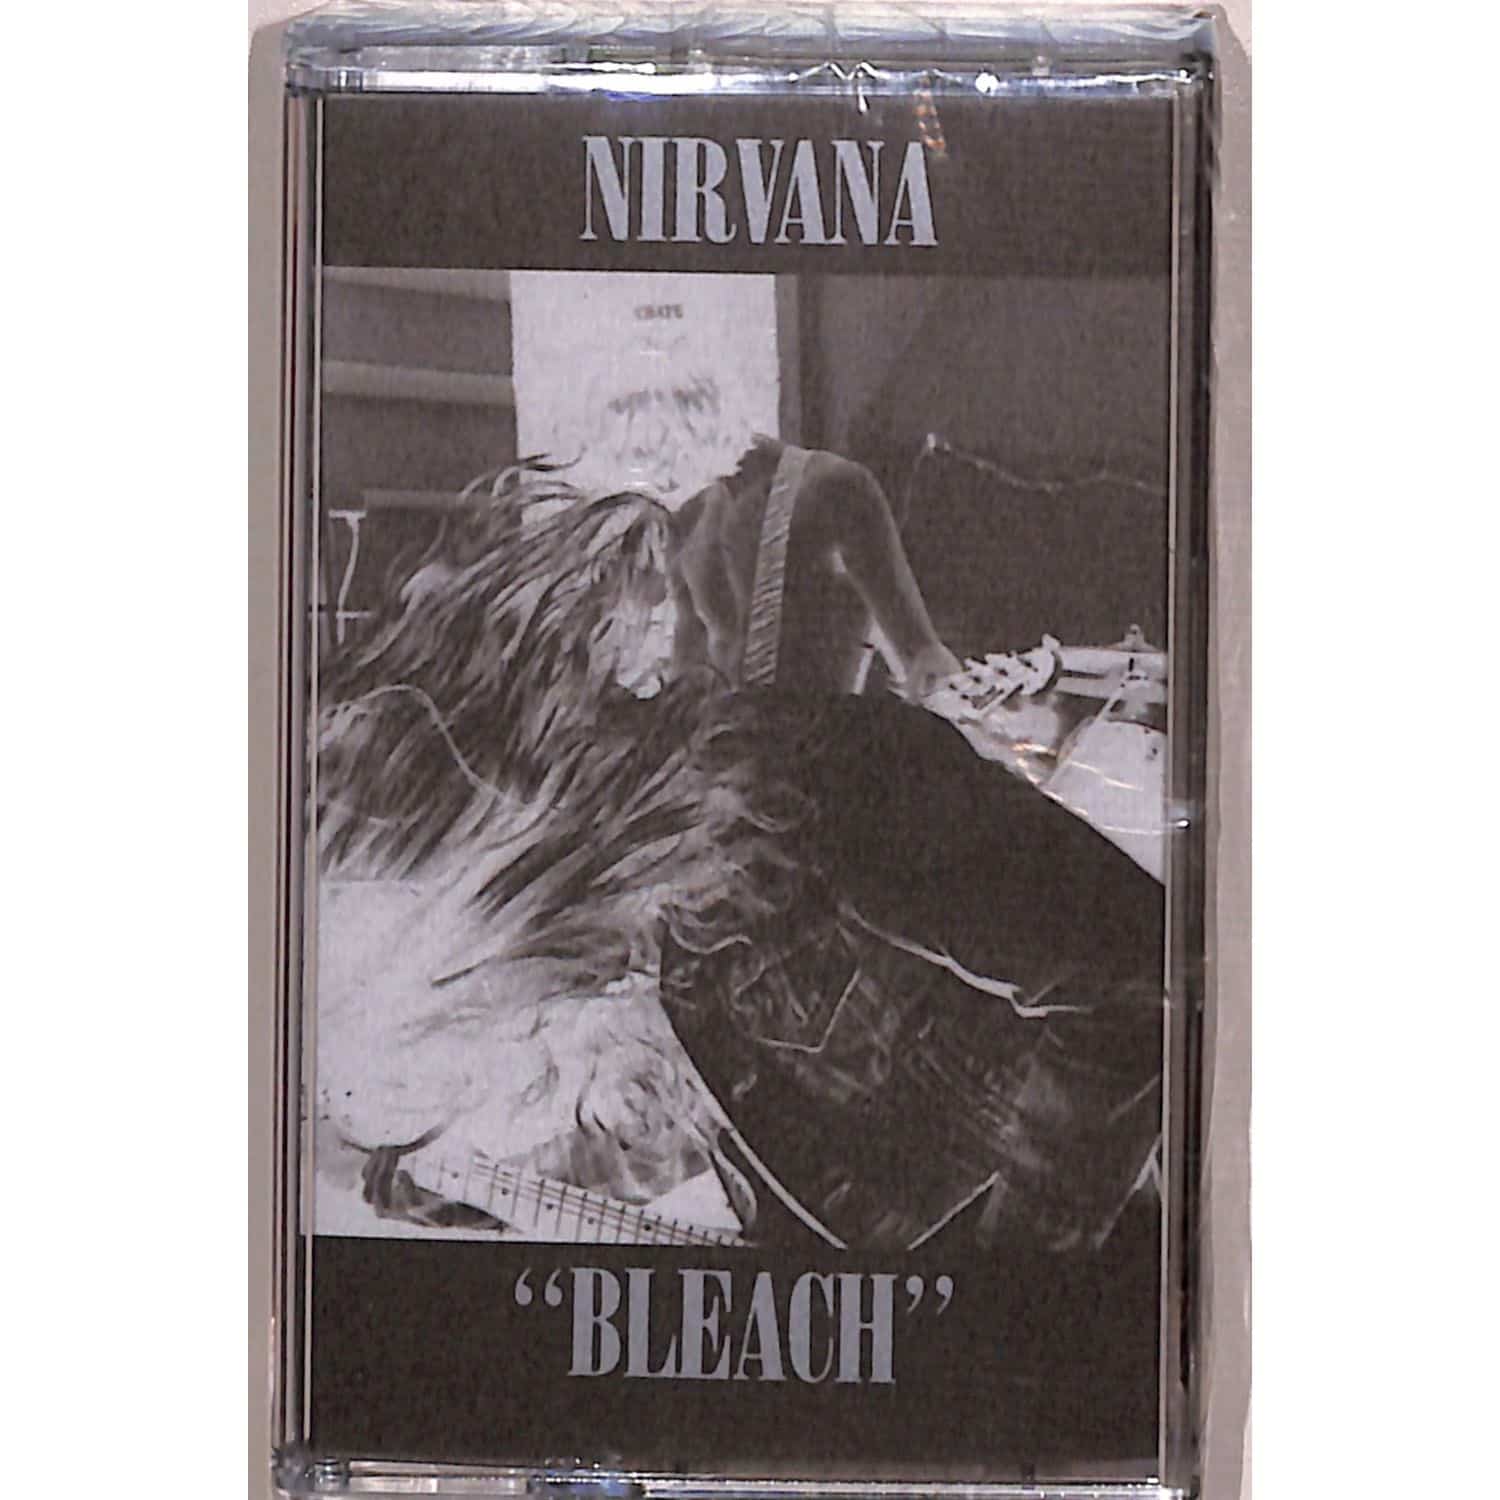 Nirvana - BLEACH 